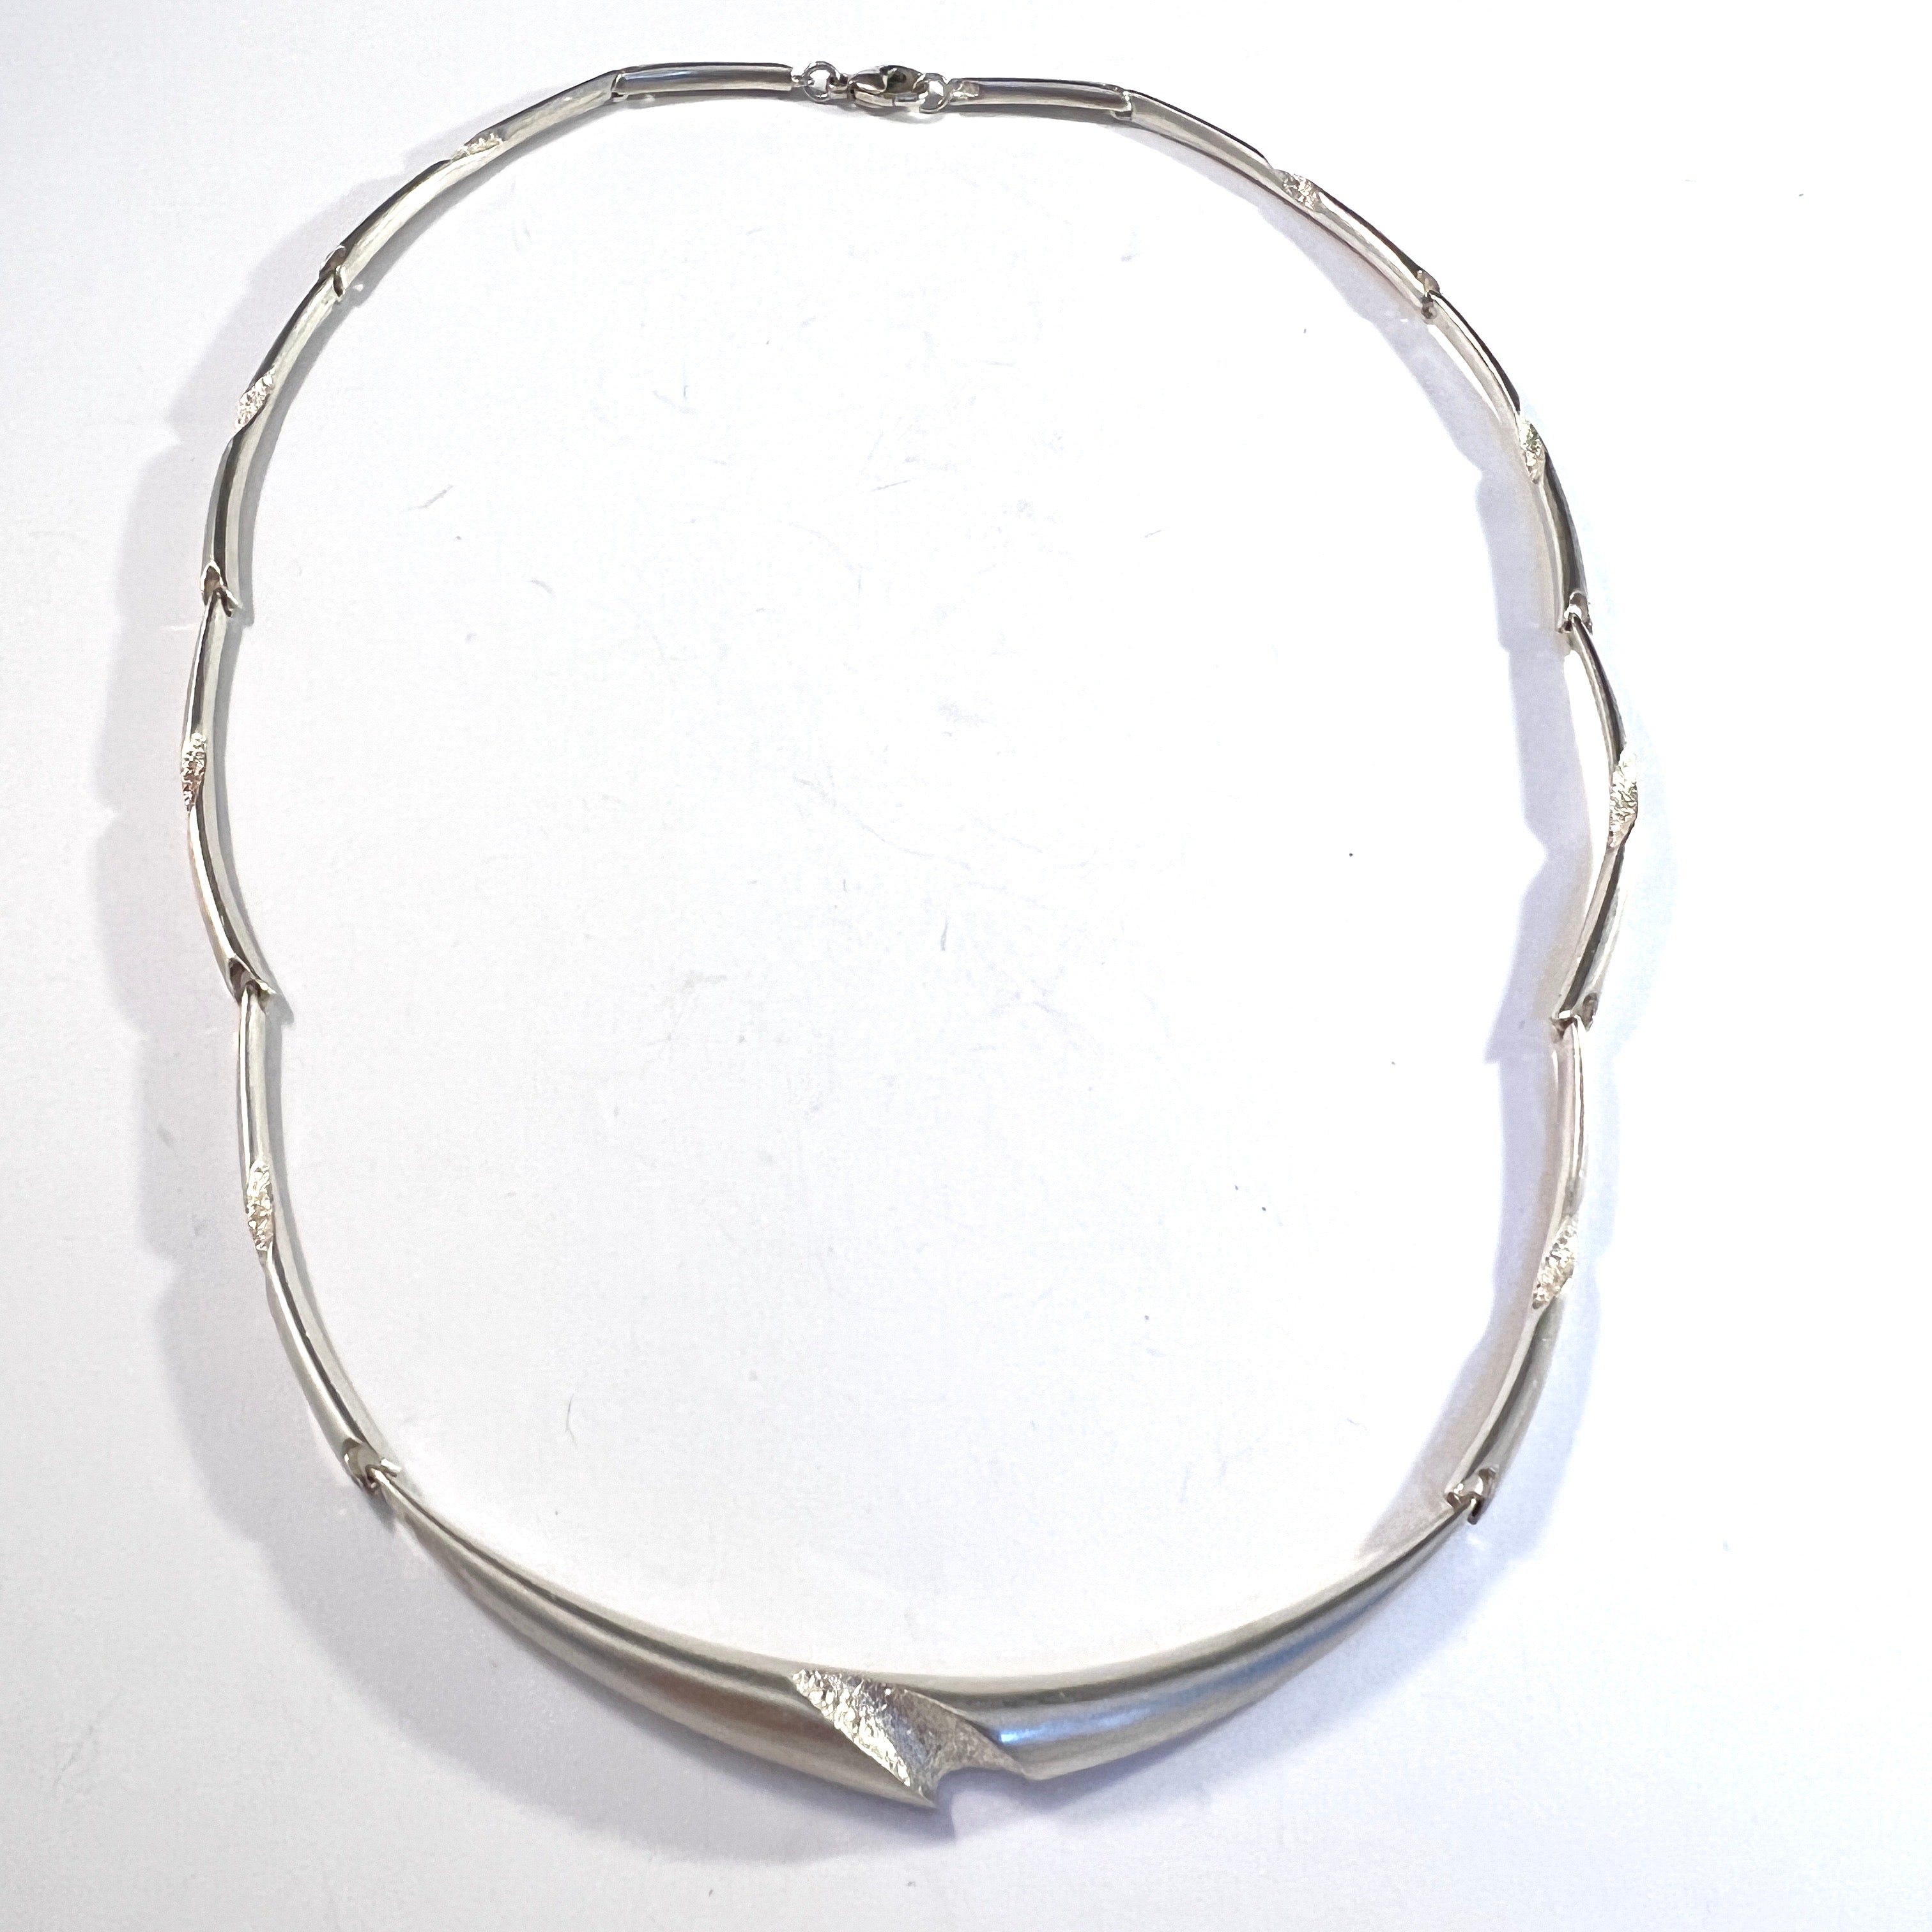 Tammen Koru, Finland 1980s. Vintage Sterling Silver Necklace.